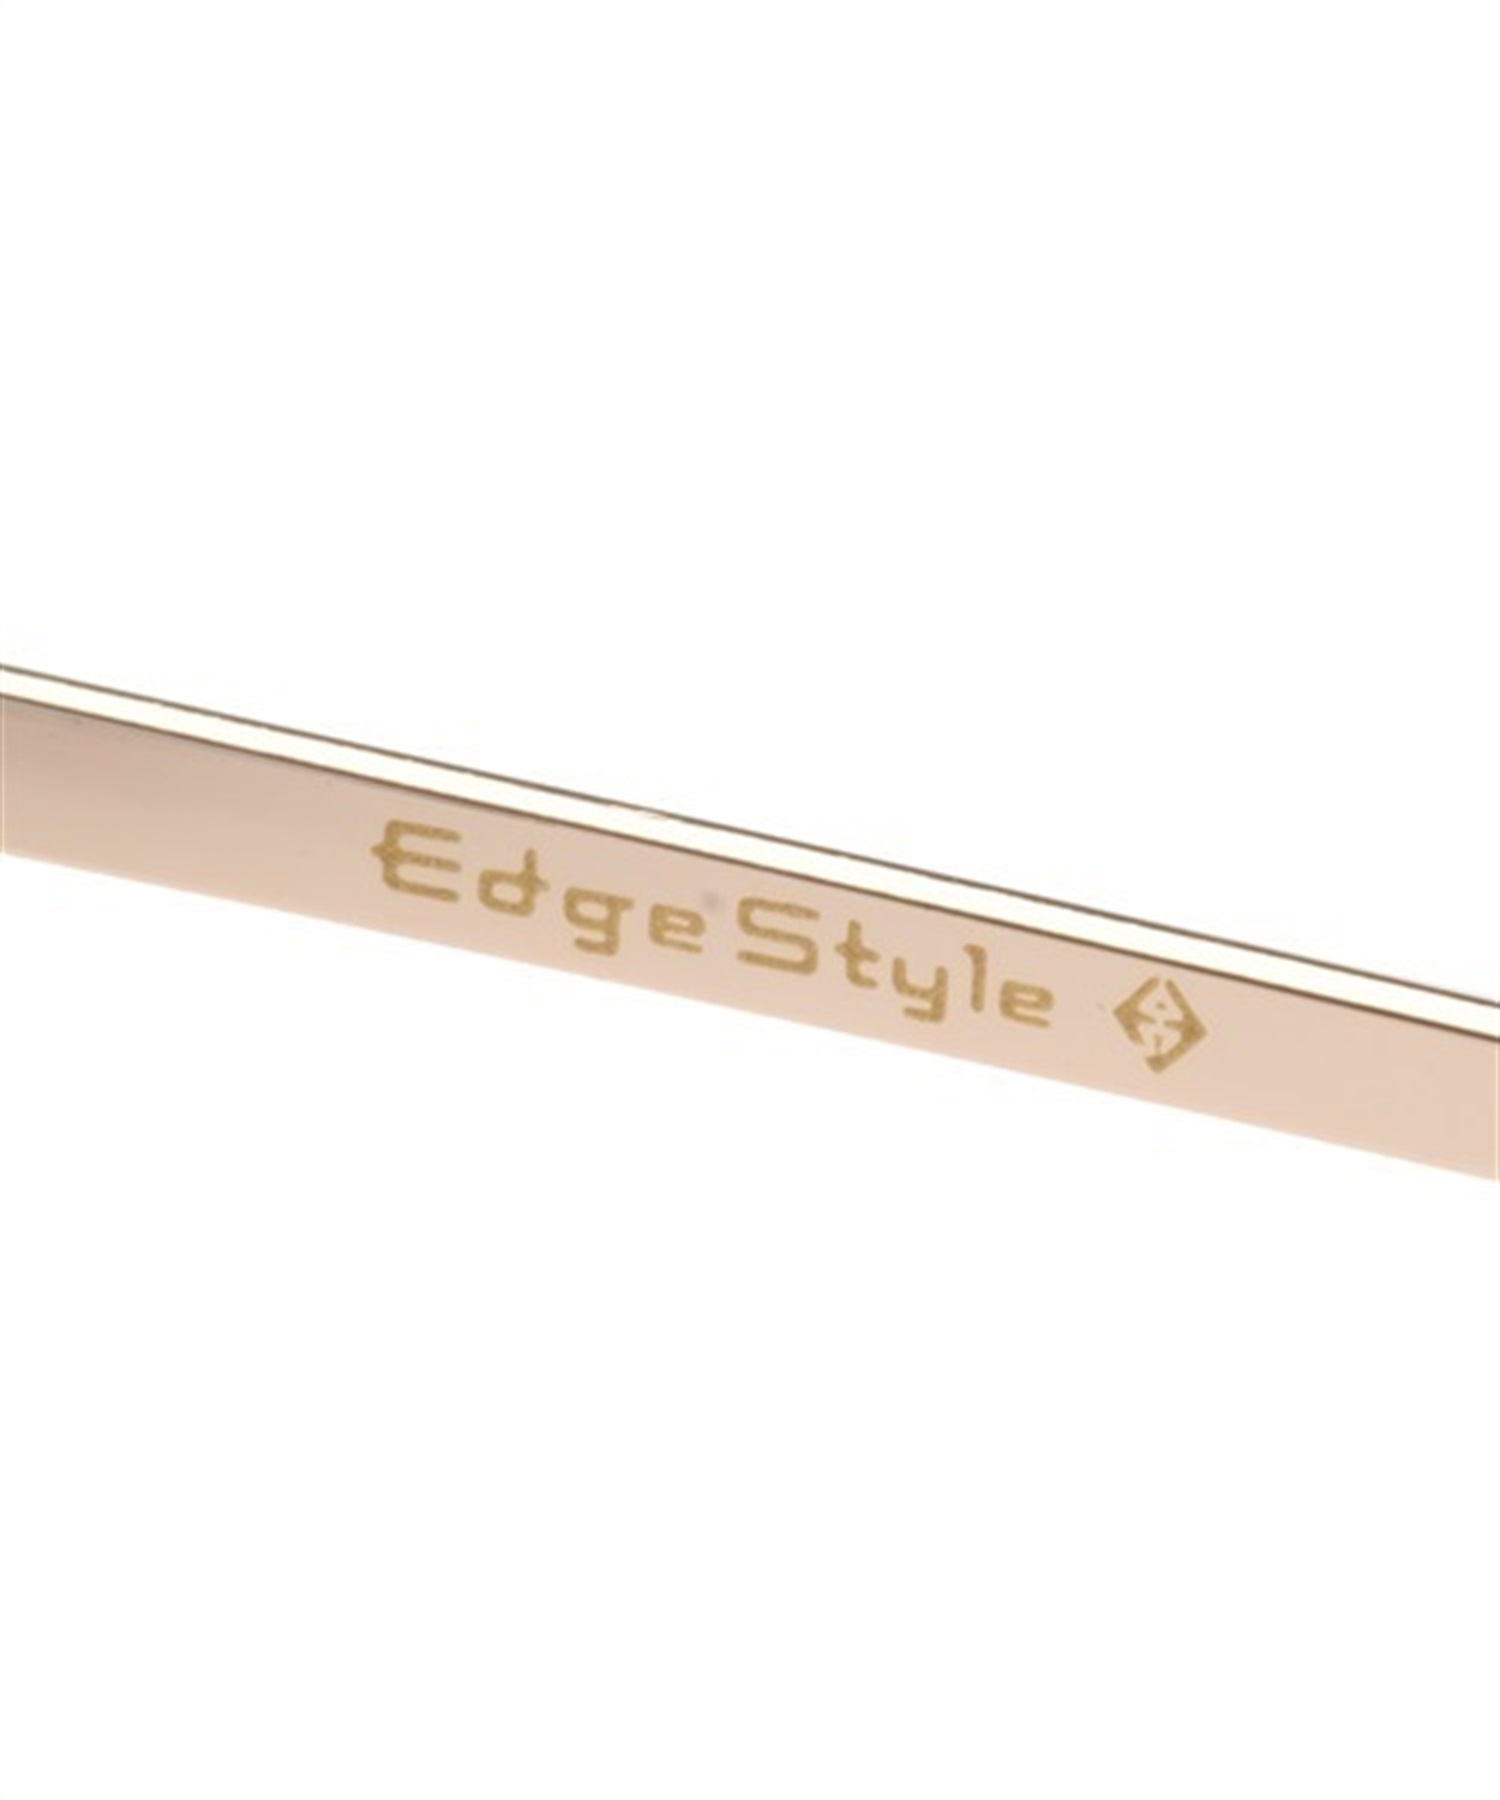 EDGE STYLE/エッジスタイル サングラス 紫外線予防 ES920-3(ONECOLOR-F)